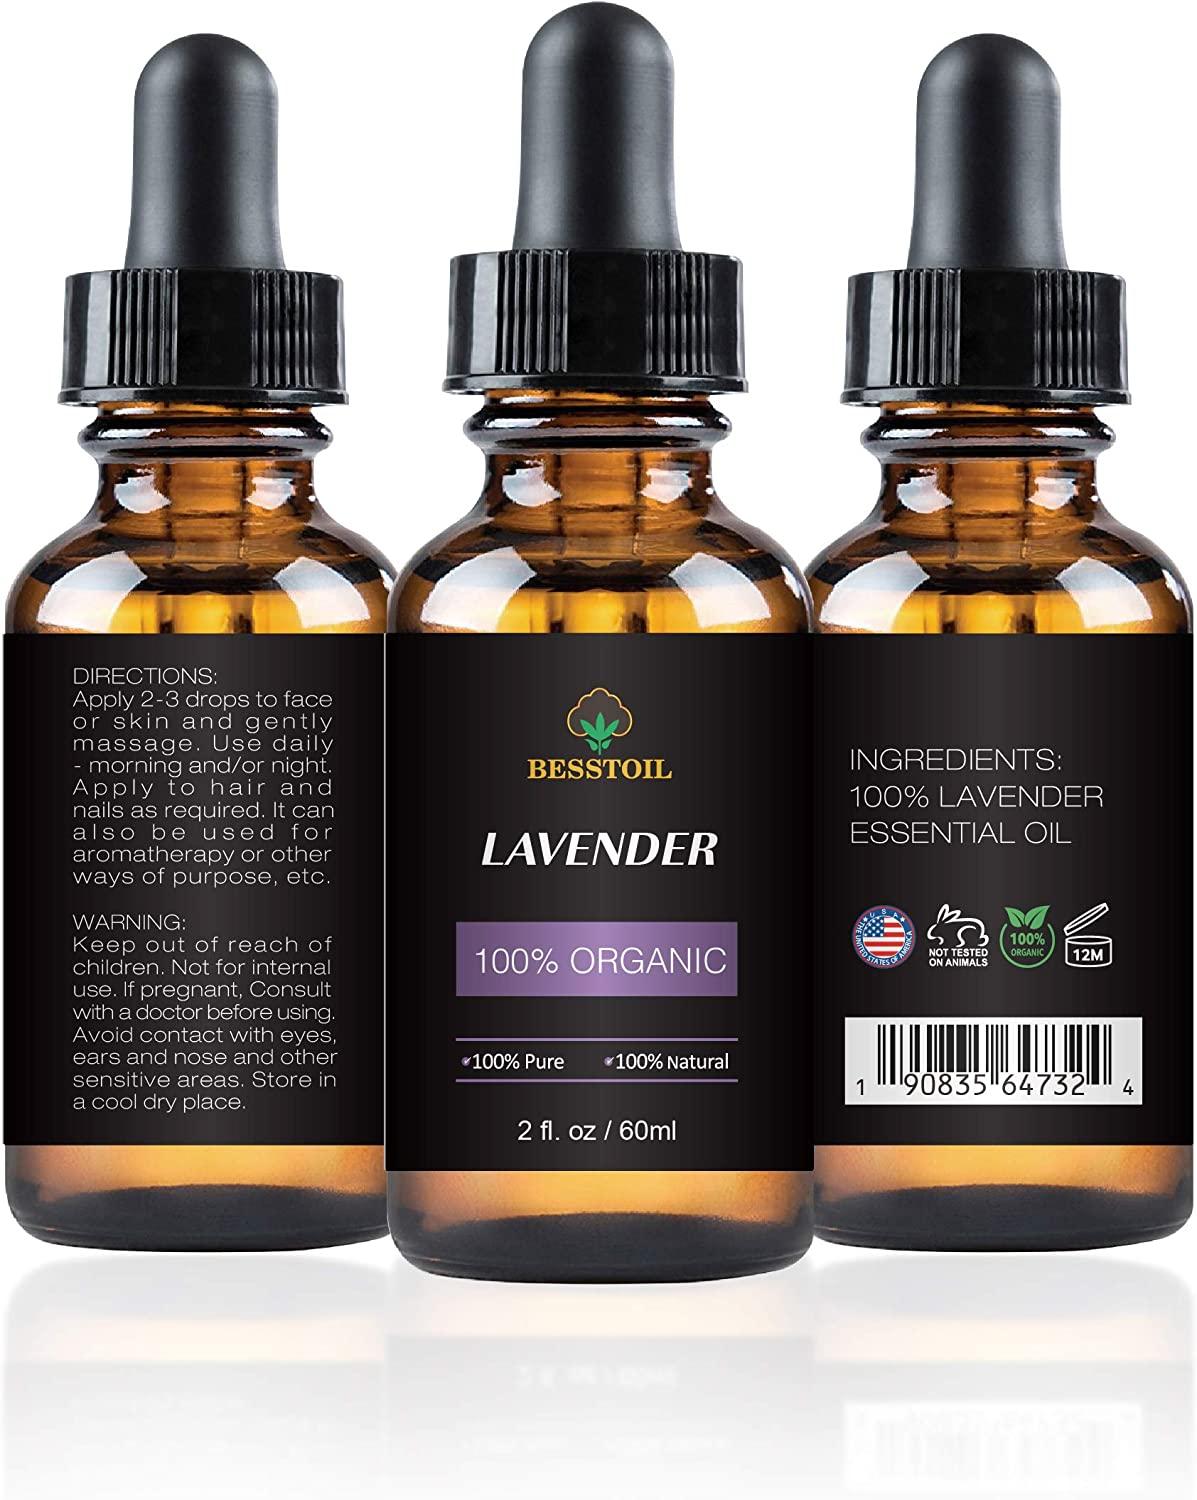 Organic Lavender Essential Oil - 100% Pure, Natural, Non-GMO, for